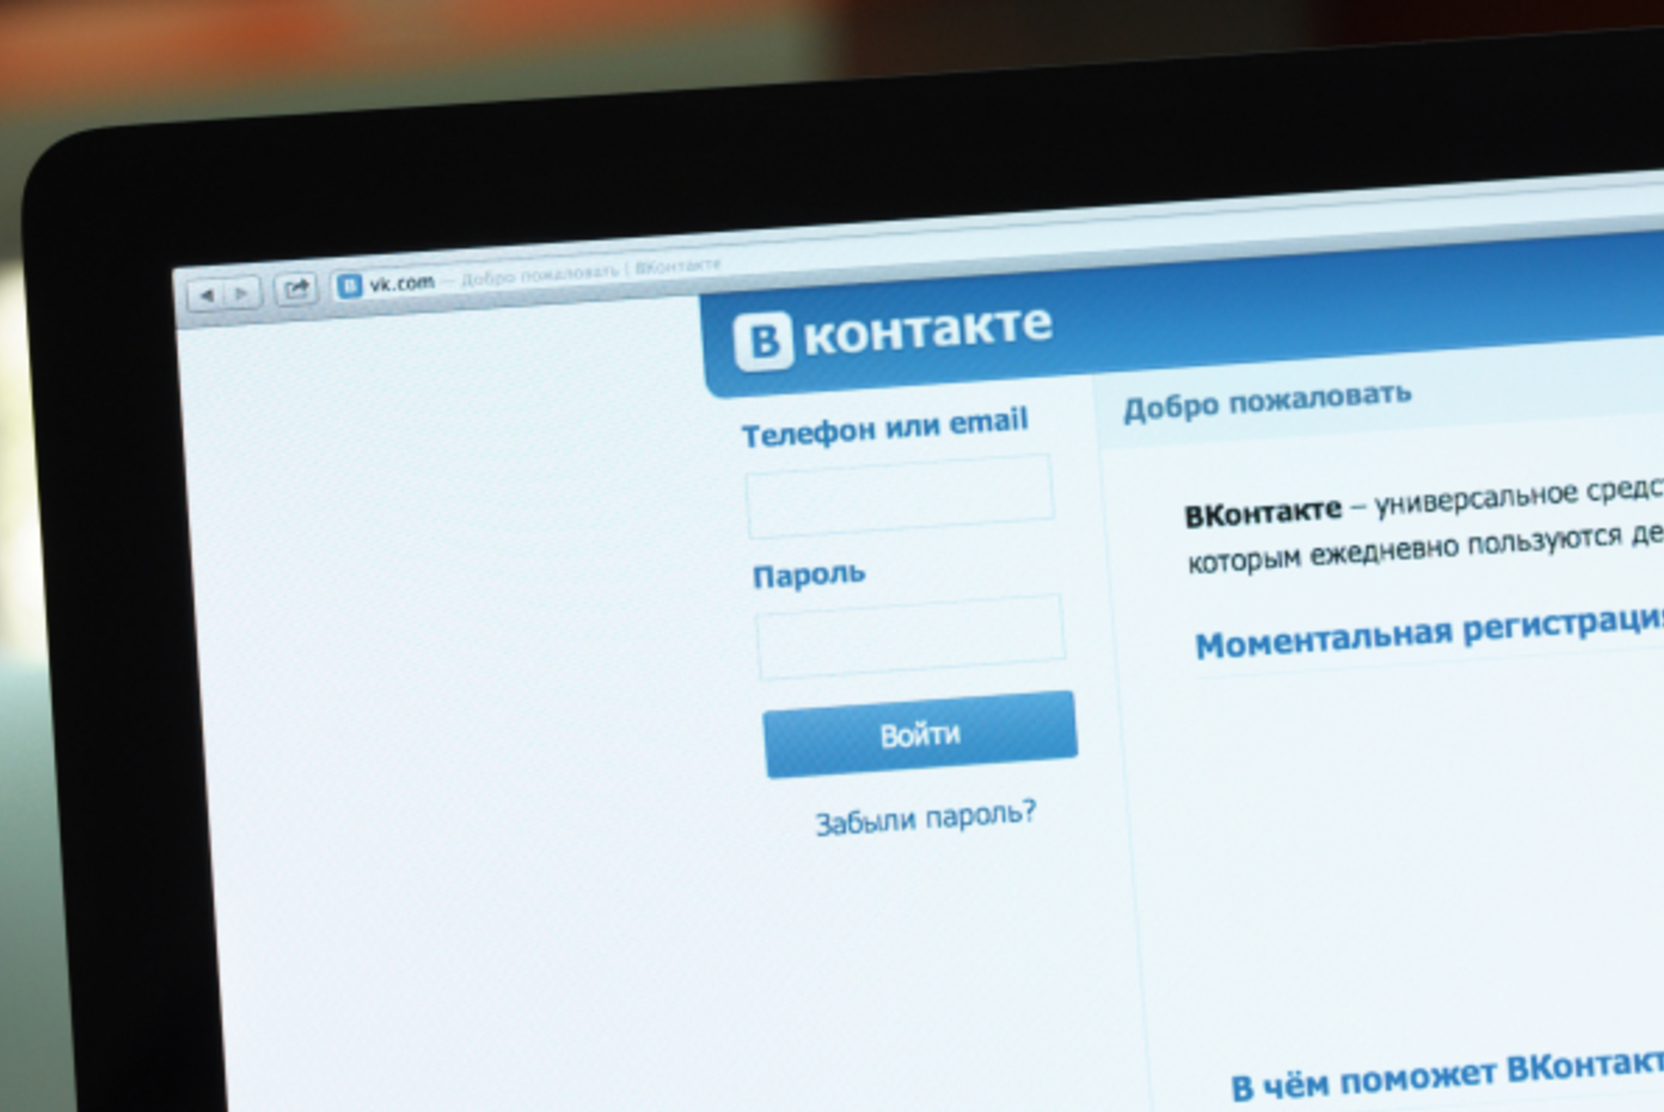 «ВКонтакте» будут судить за ролики с призывами к митингам